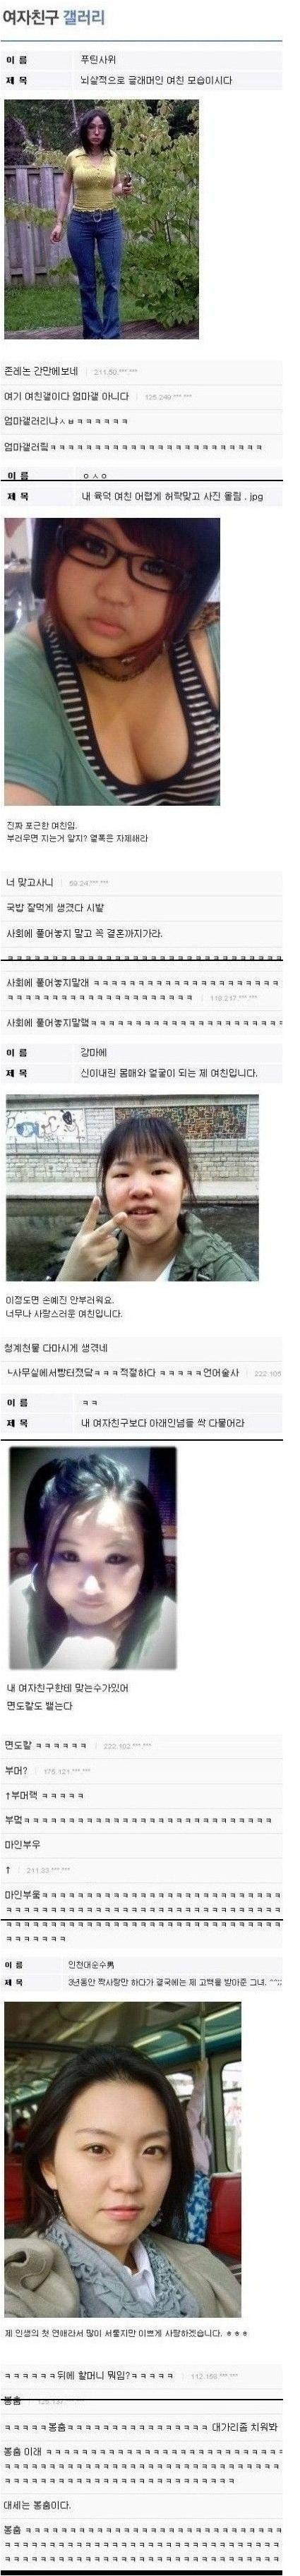 디시인들의 여친인증 그와중 깨알같은 용현동 신혜경.jpg